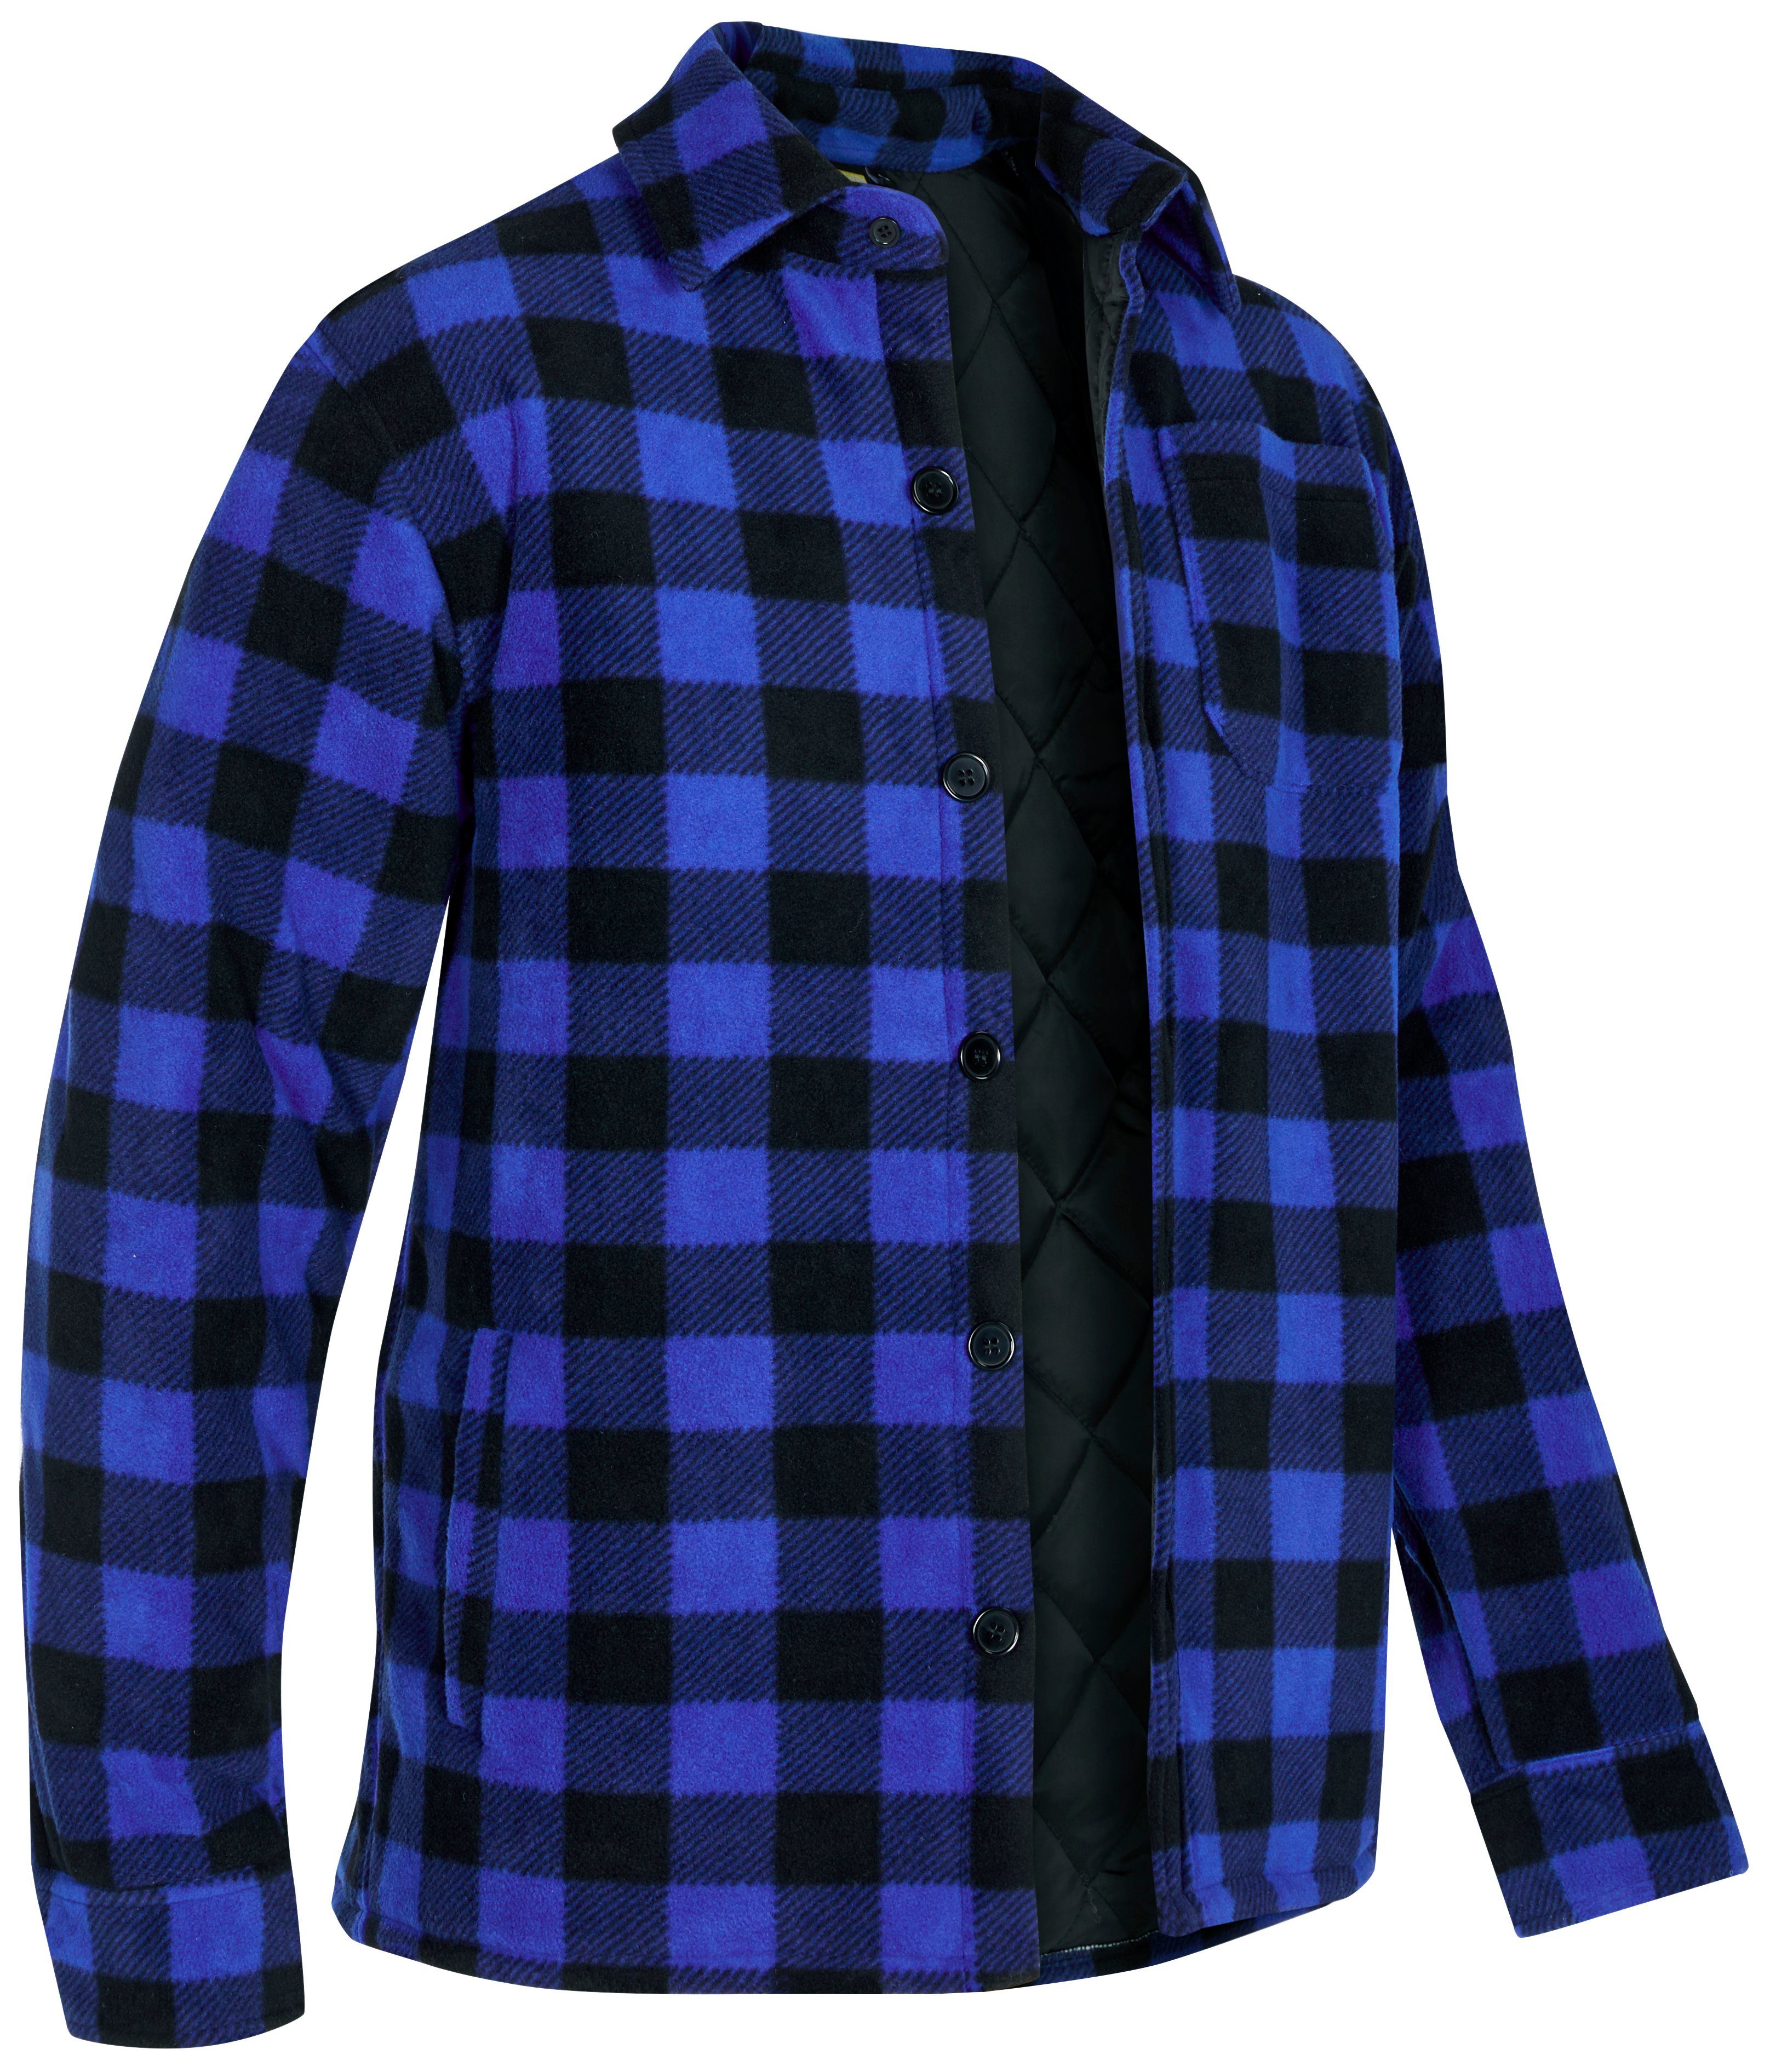 Niedlich! Taschen, mit (als mit gefüttert, blau-schwarz Northern Jacke zu warm offen Hemd Country Flanellstoff Flanellhemd 5 tragen) Rücken, oder zugeknöpft verlängertem